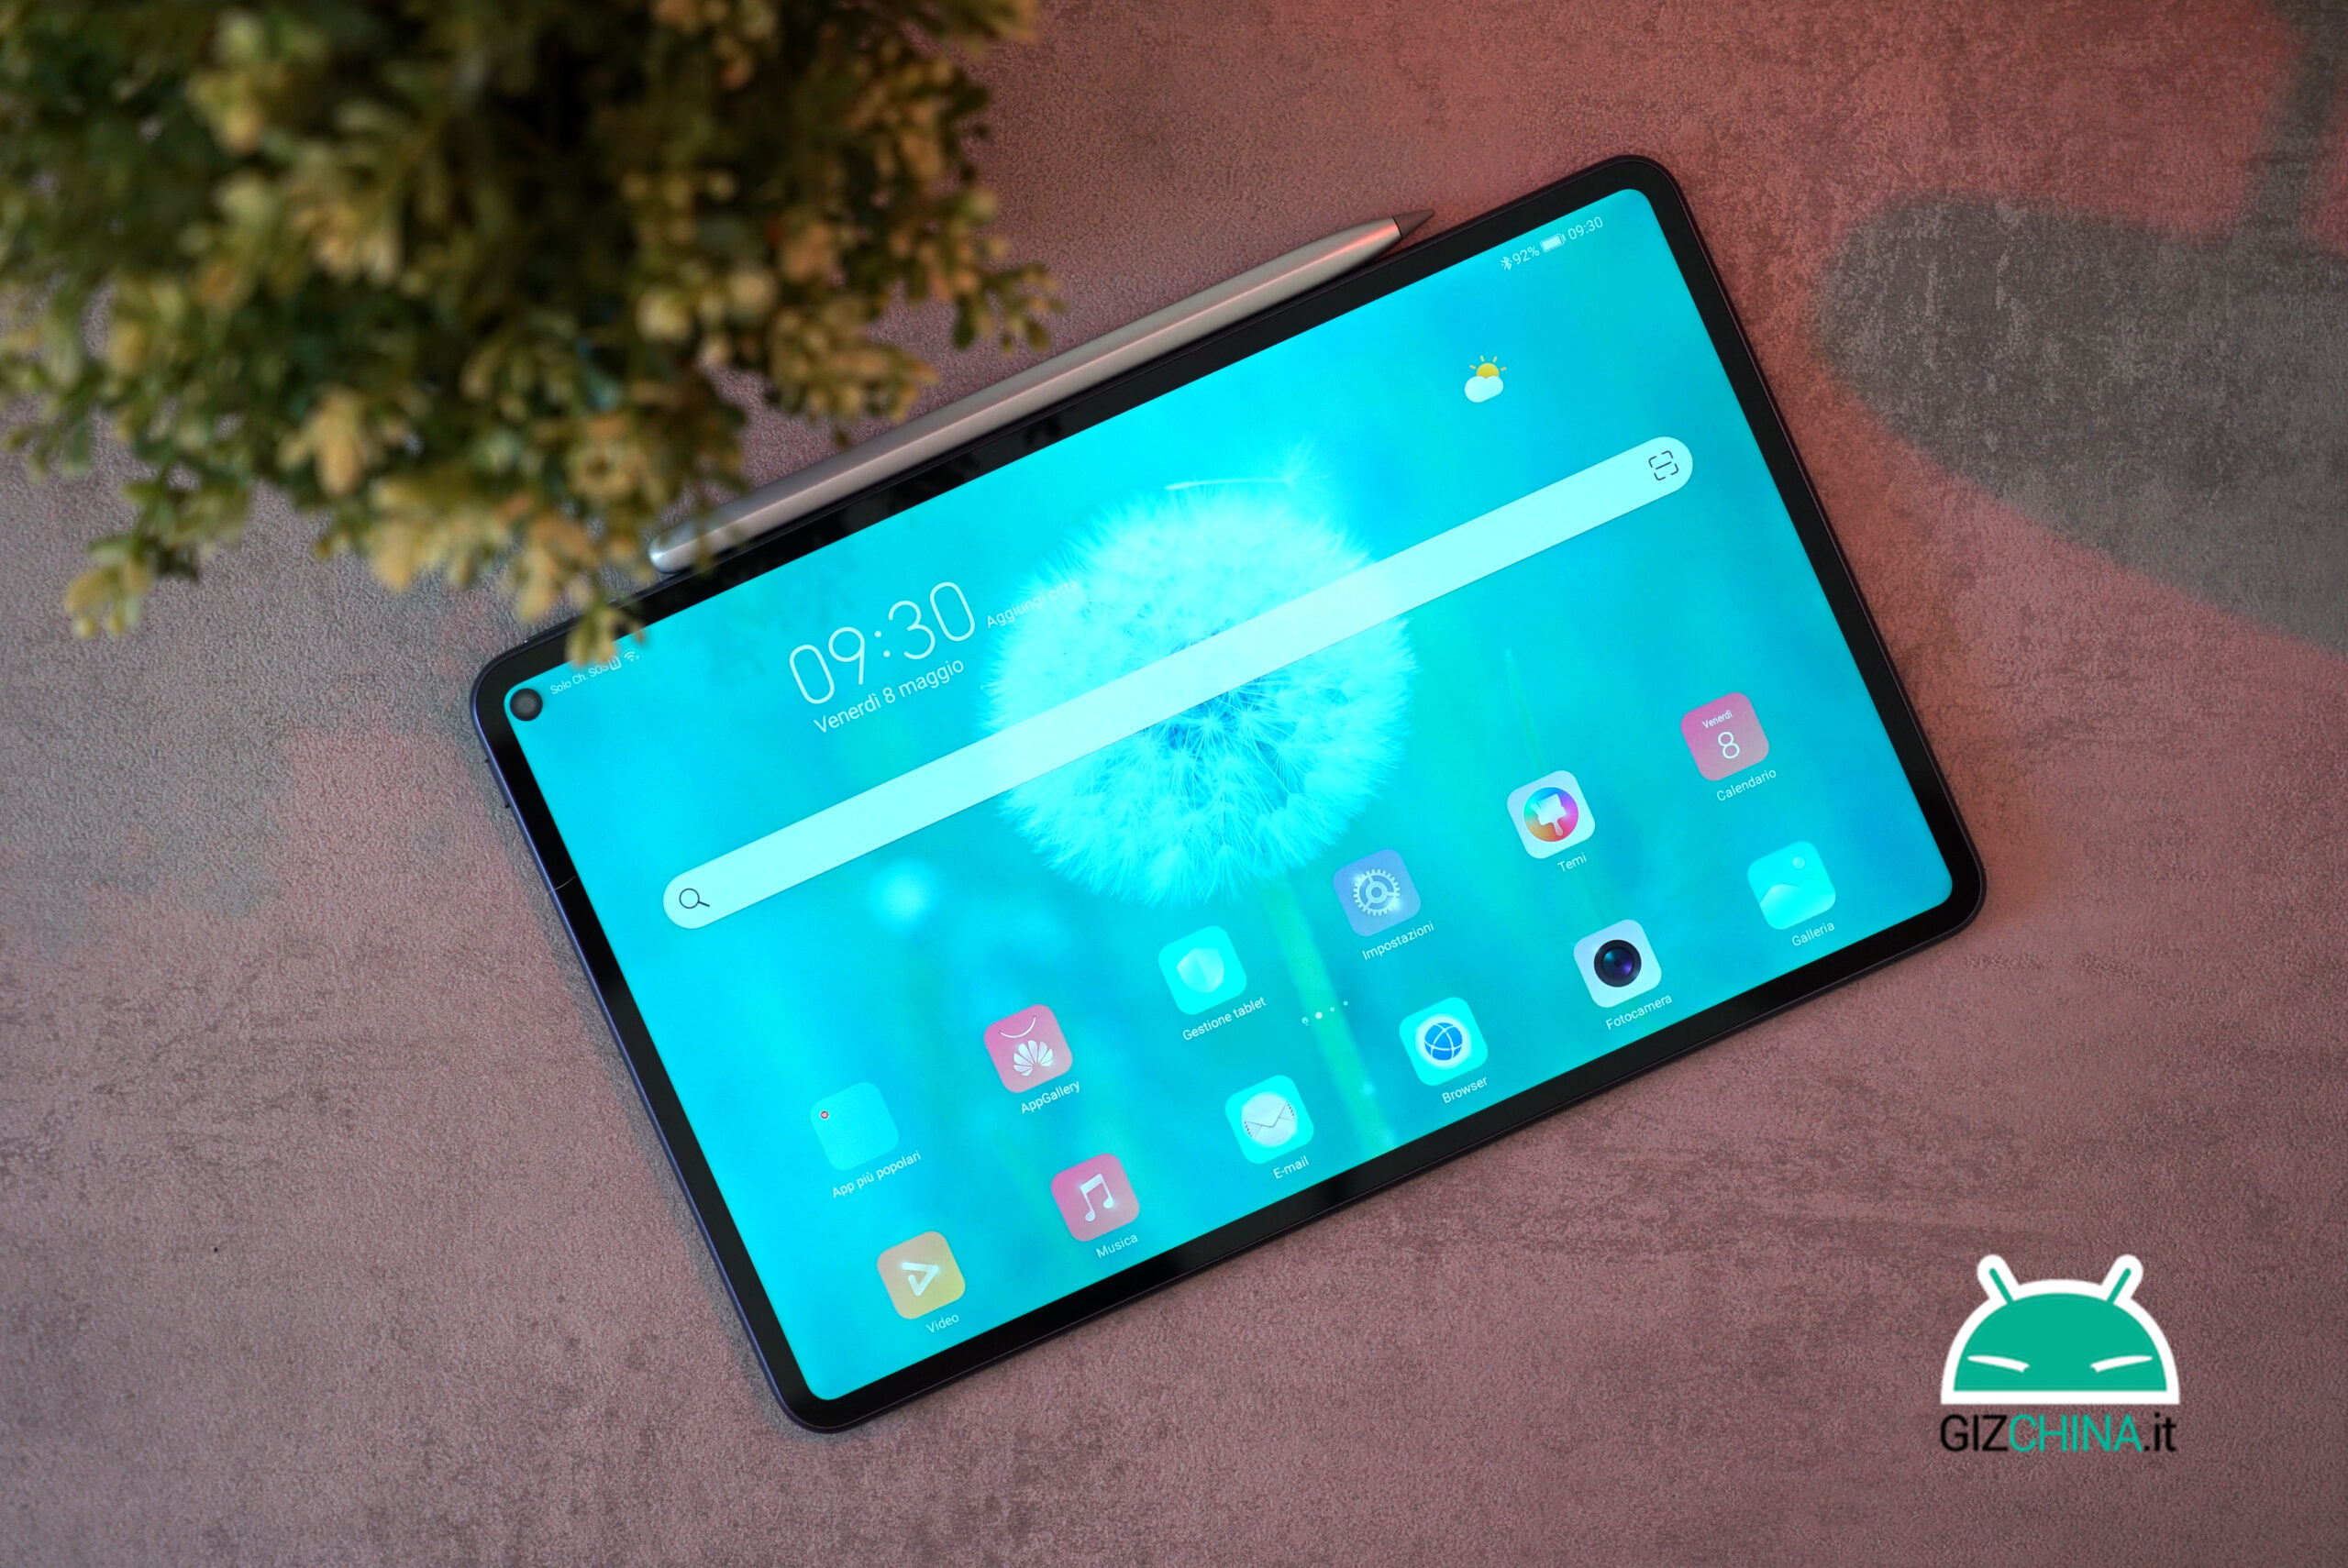 Huawei MatePad Pro, un ottimo tablet Android al giusto prezzo. La